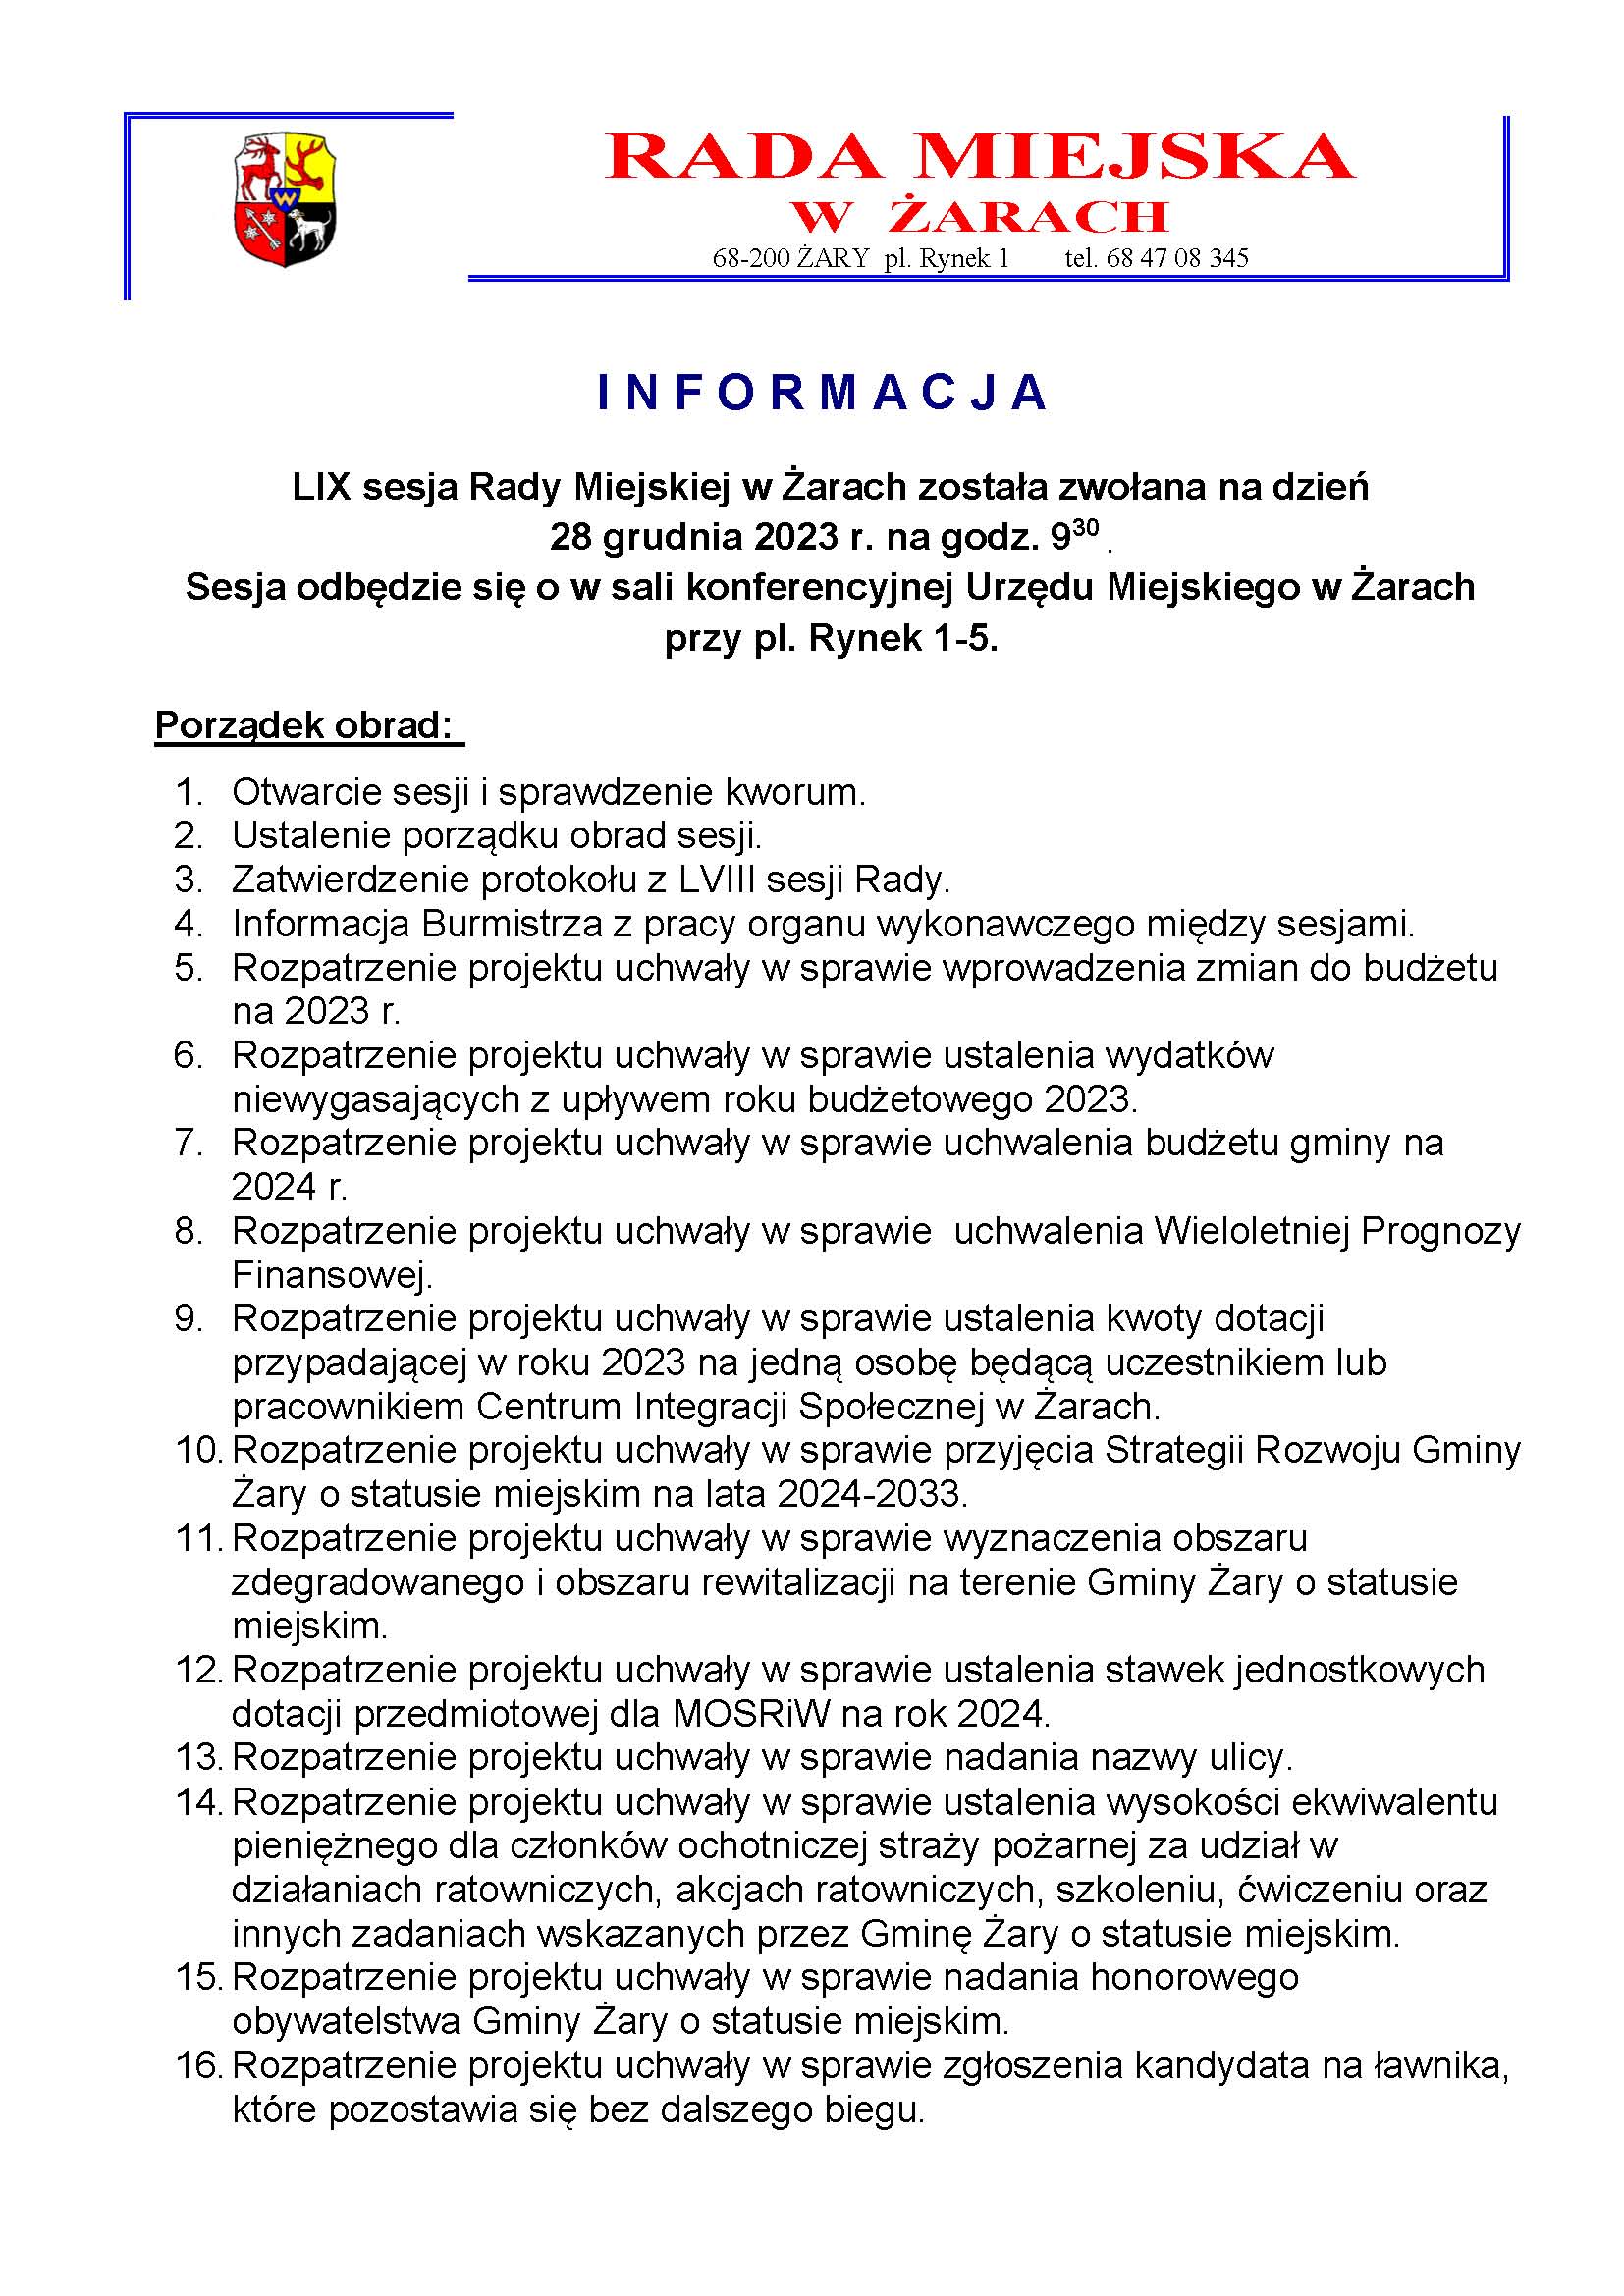 Informacja o LIX sesji Rady Miejskiej w Żarach